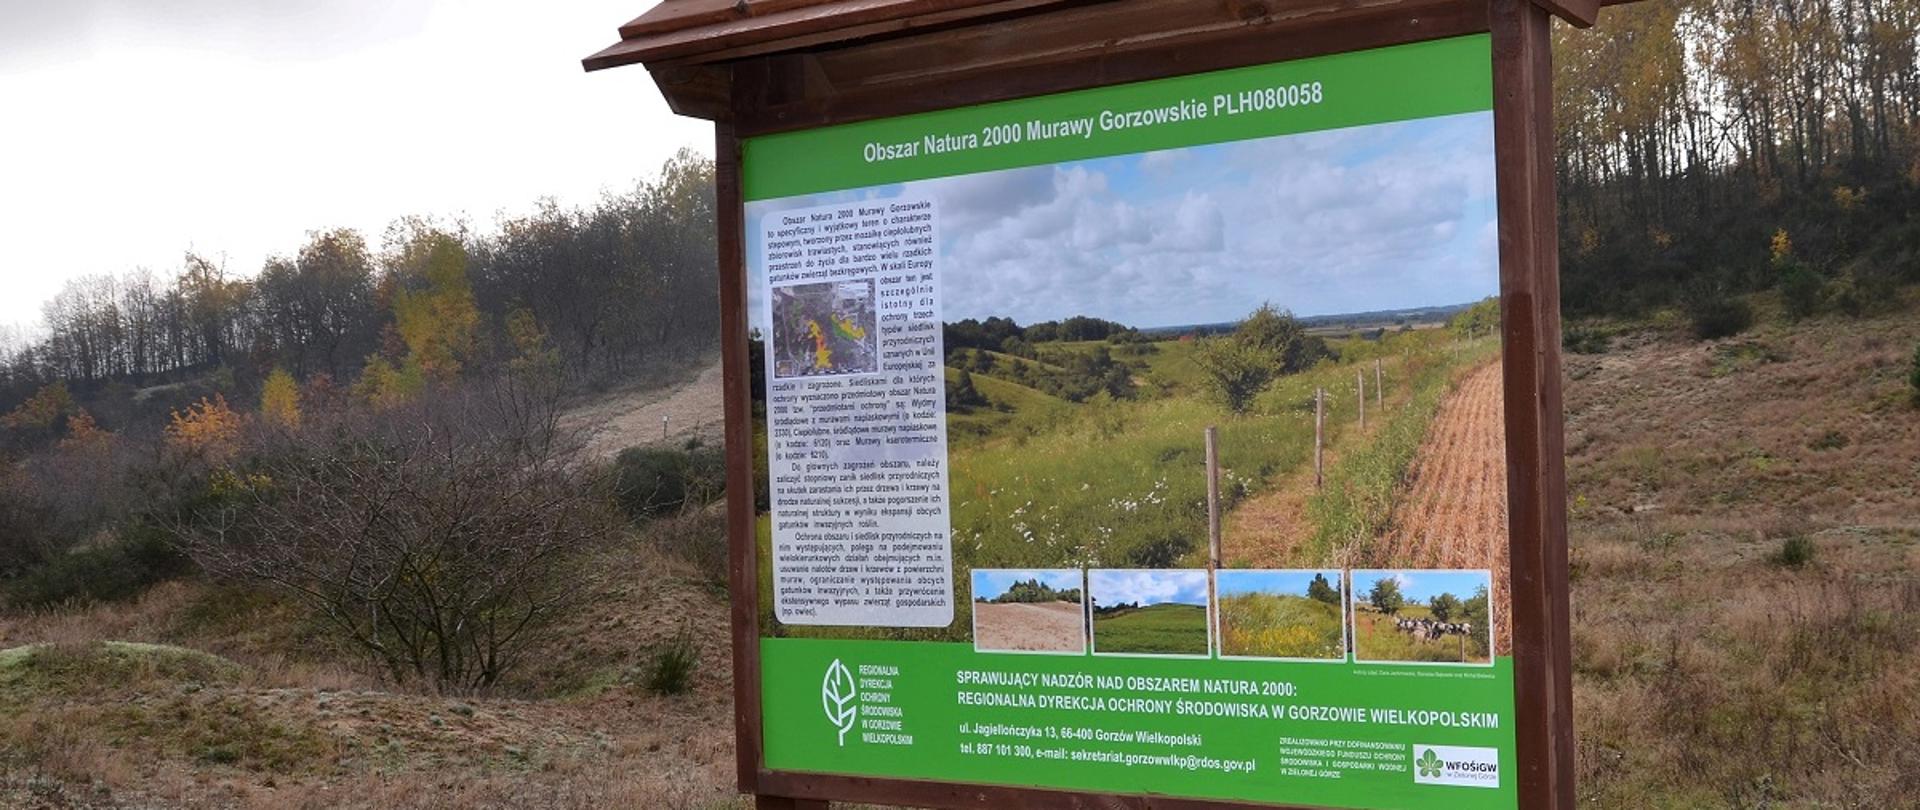 Tablica informująca o obszarze Natura 2000 Murawy Gorzowskie w tle drzewa i krzewy.